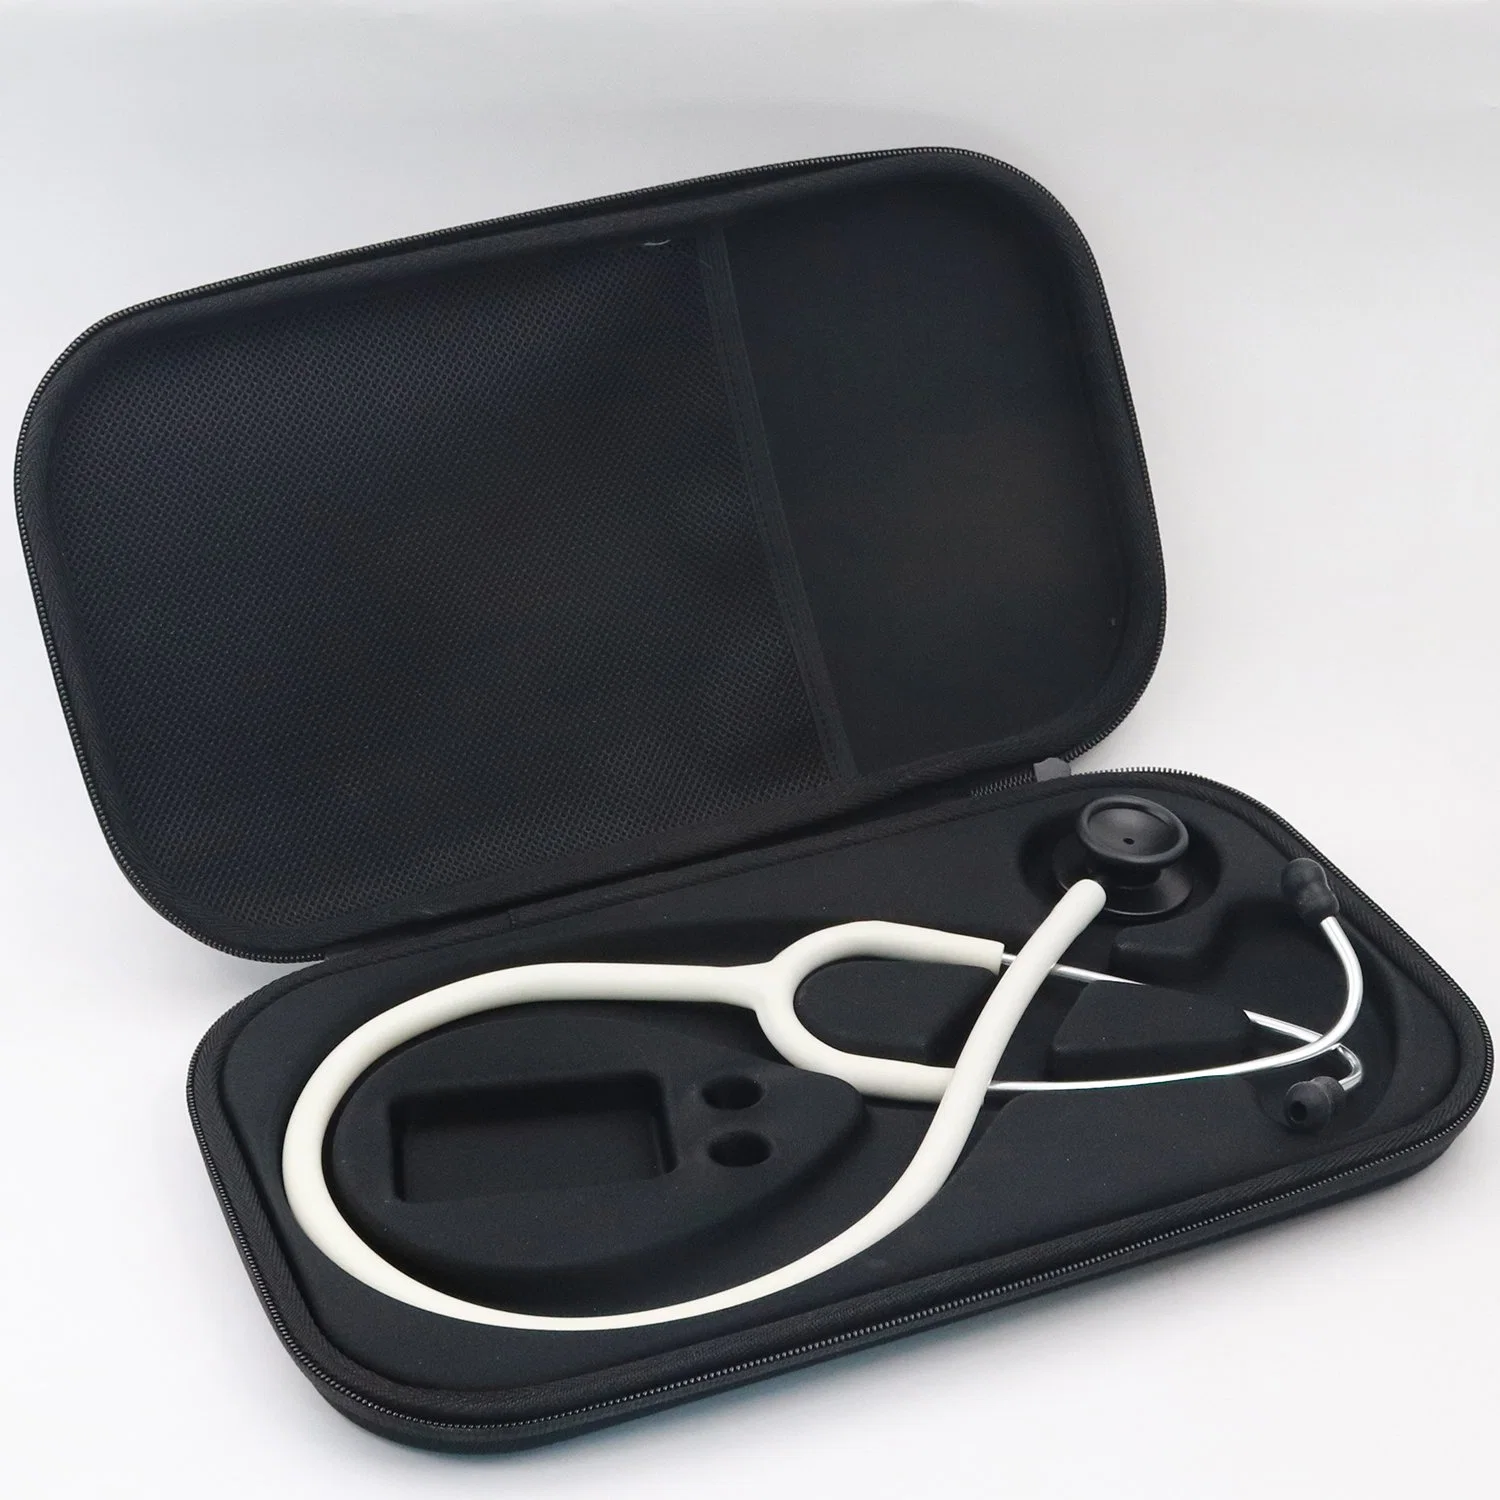 Accesorios de viaje con cremallera Médico Universal llevar cuero impermeable Caja de almacenamiento portátil EVA enfermera para todos los Littmann estetoscopio bolsa caso